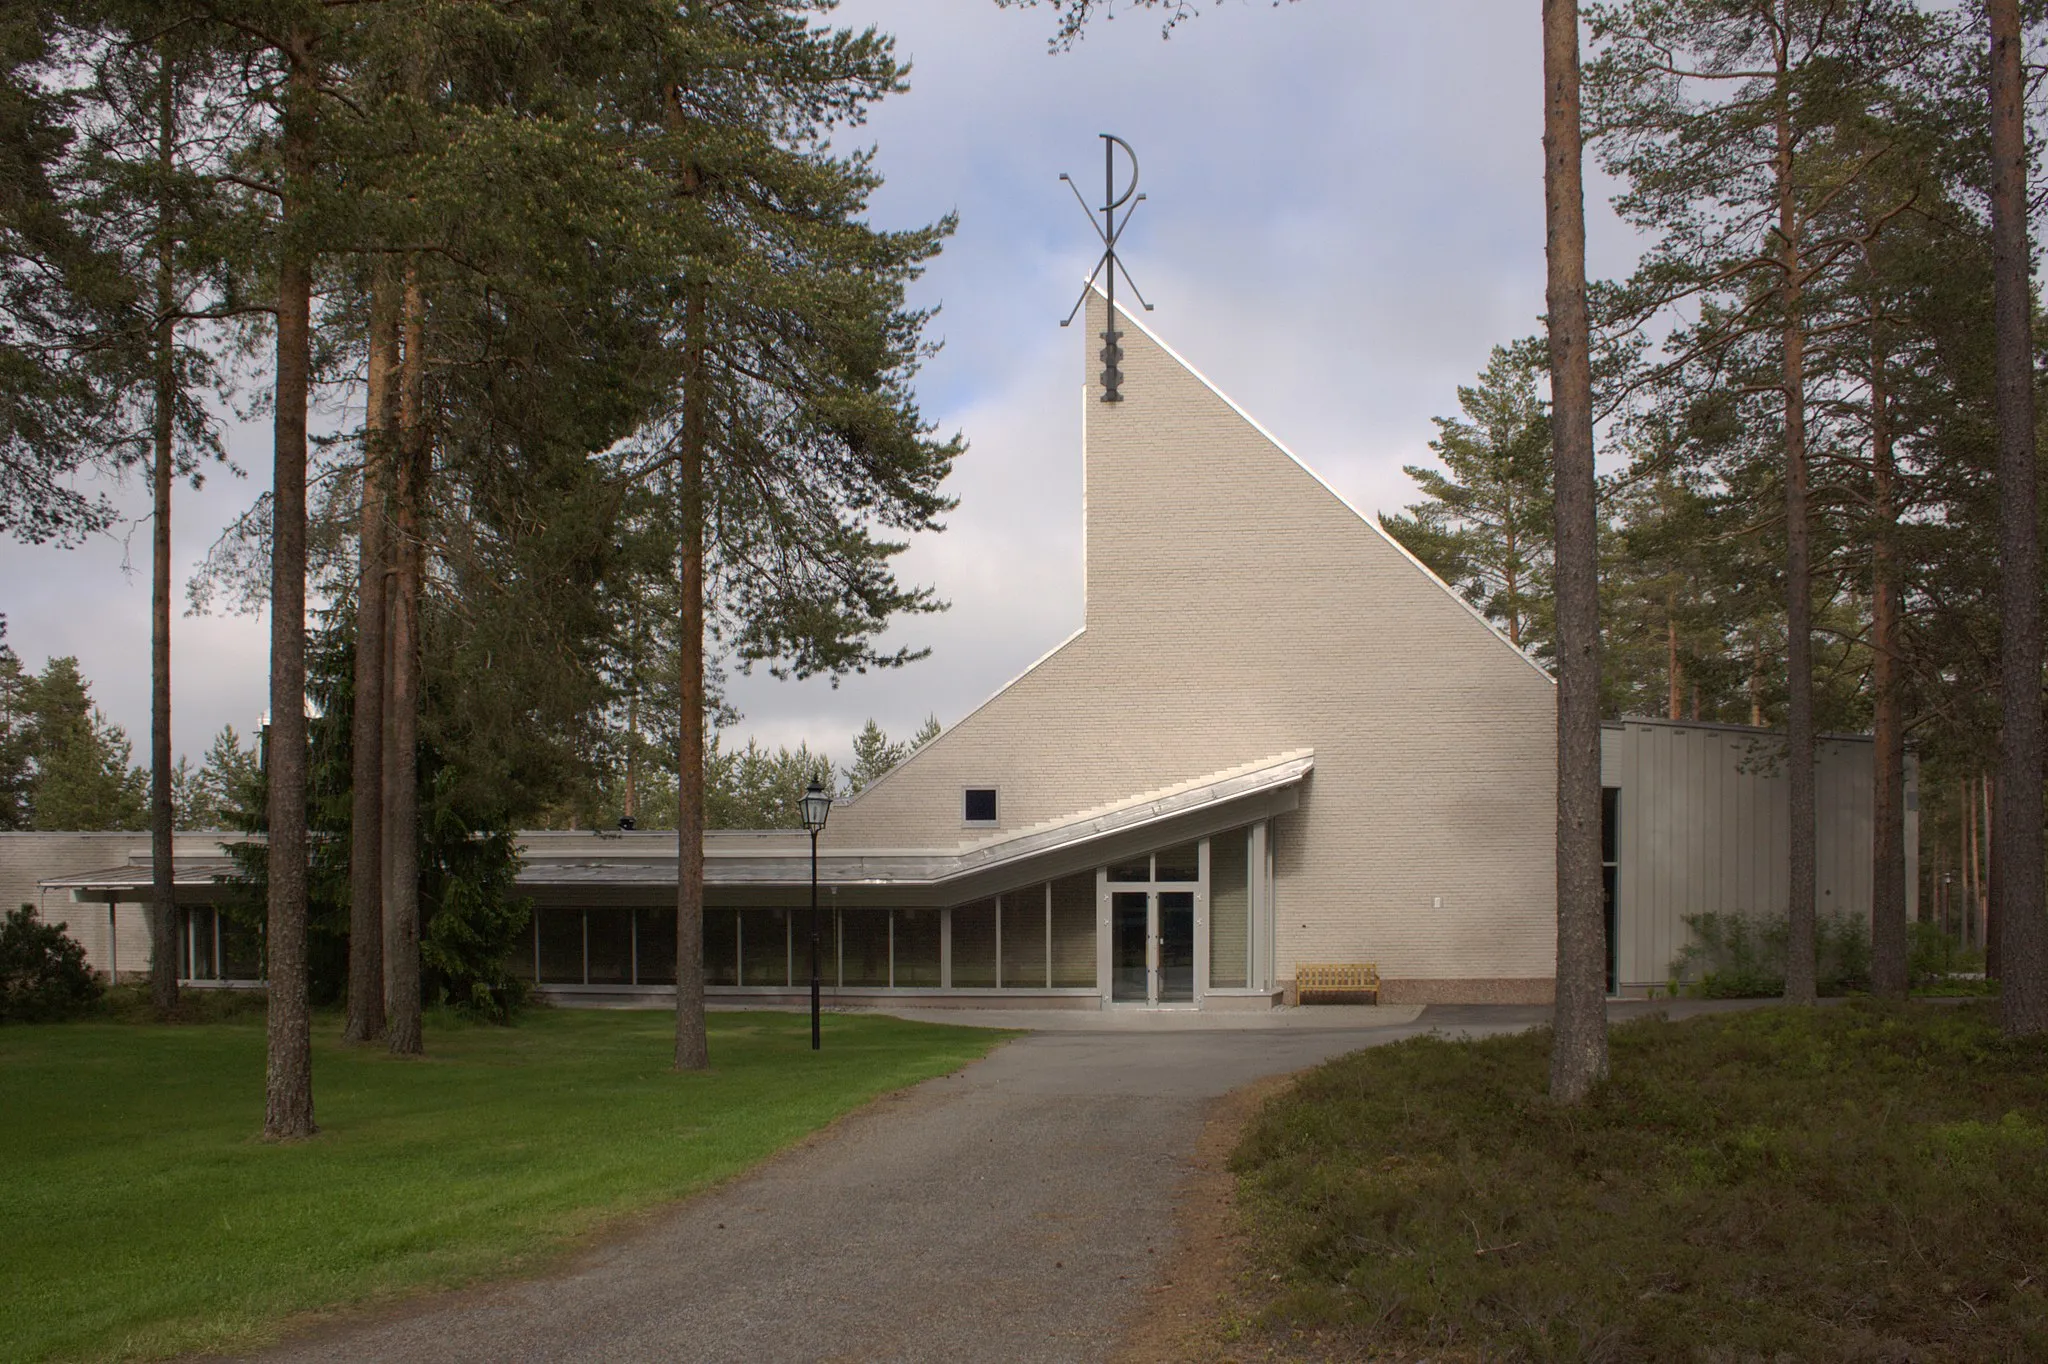 Image of Övre Norrland